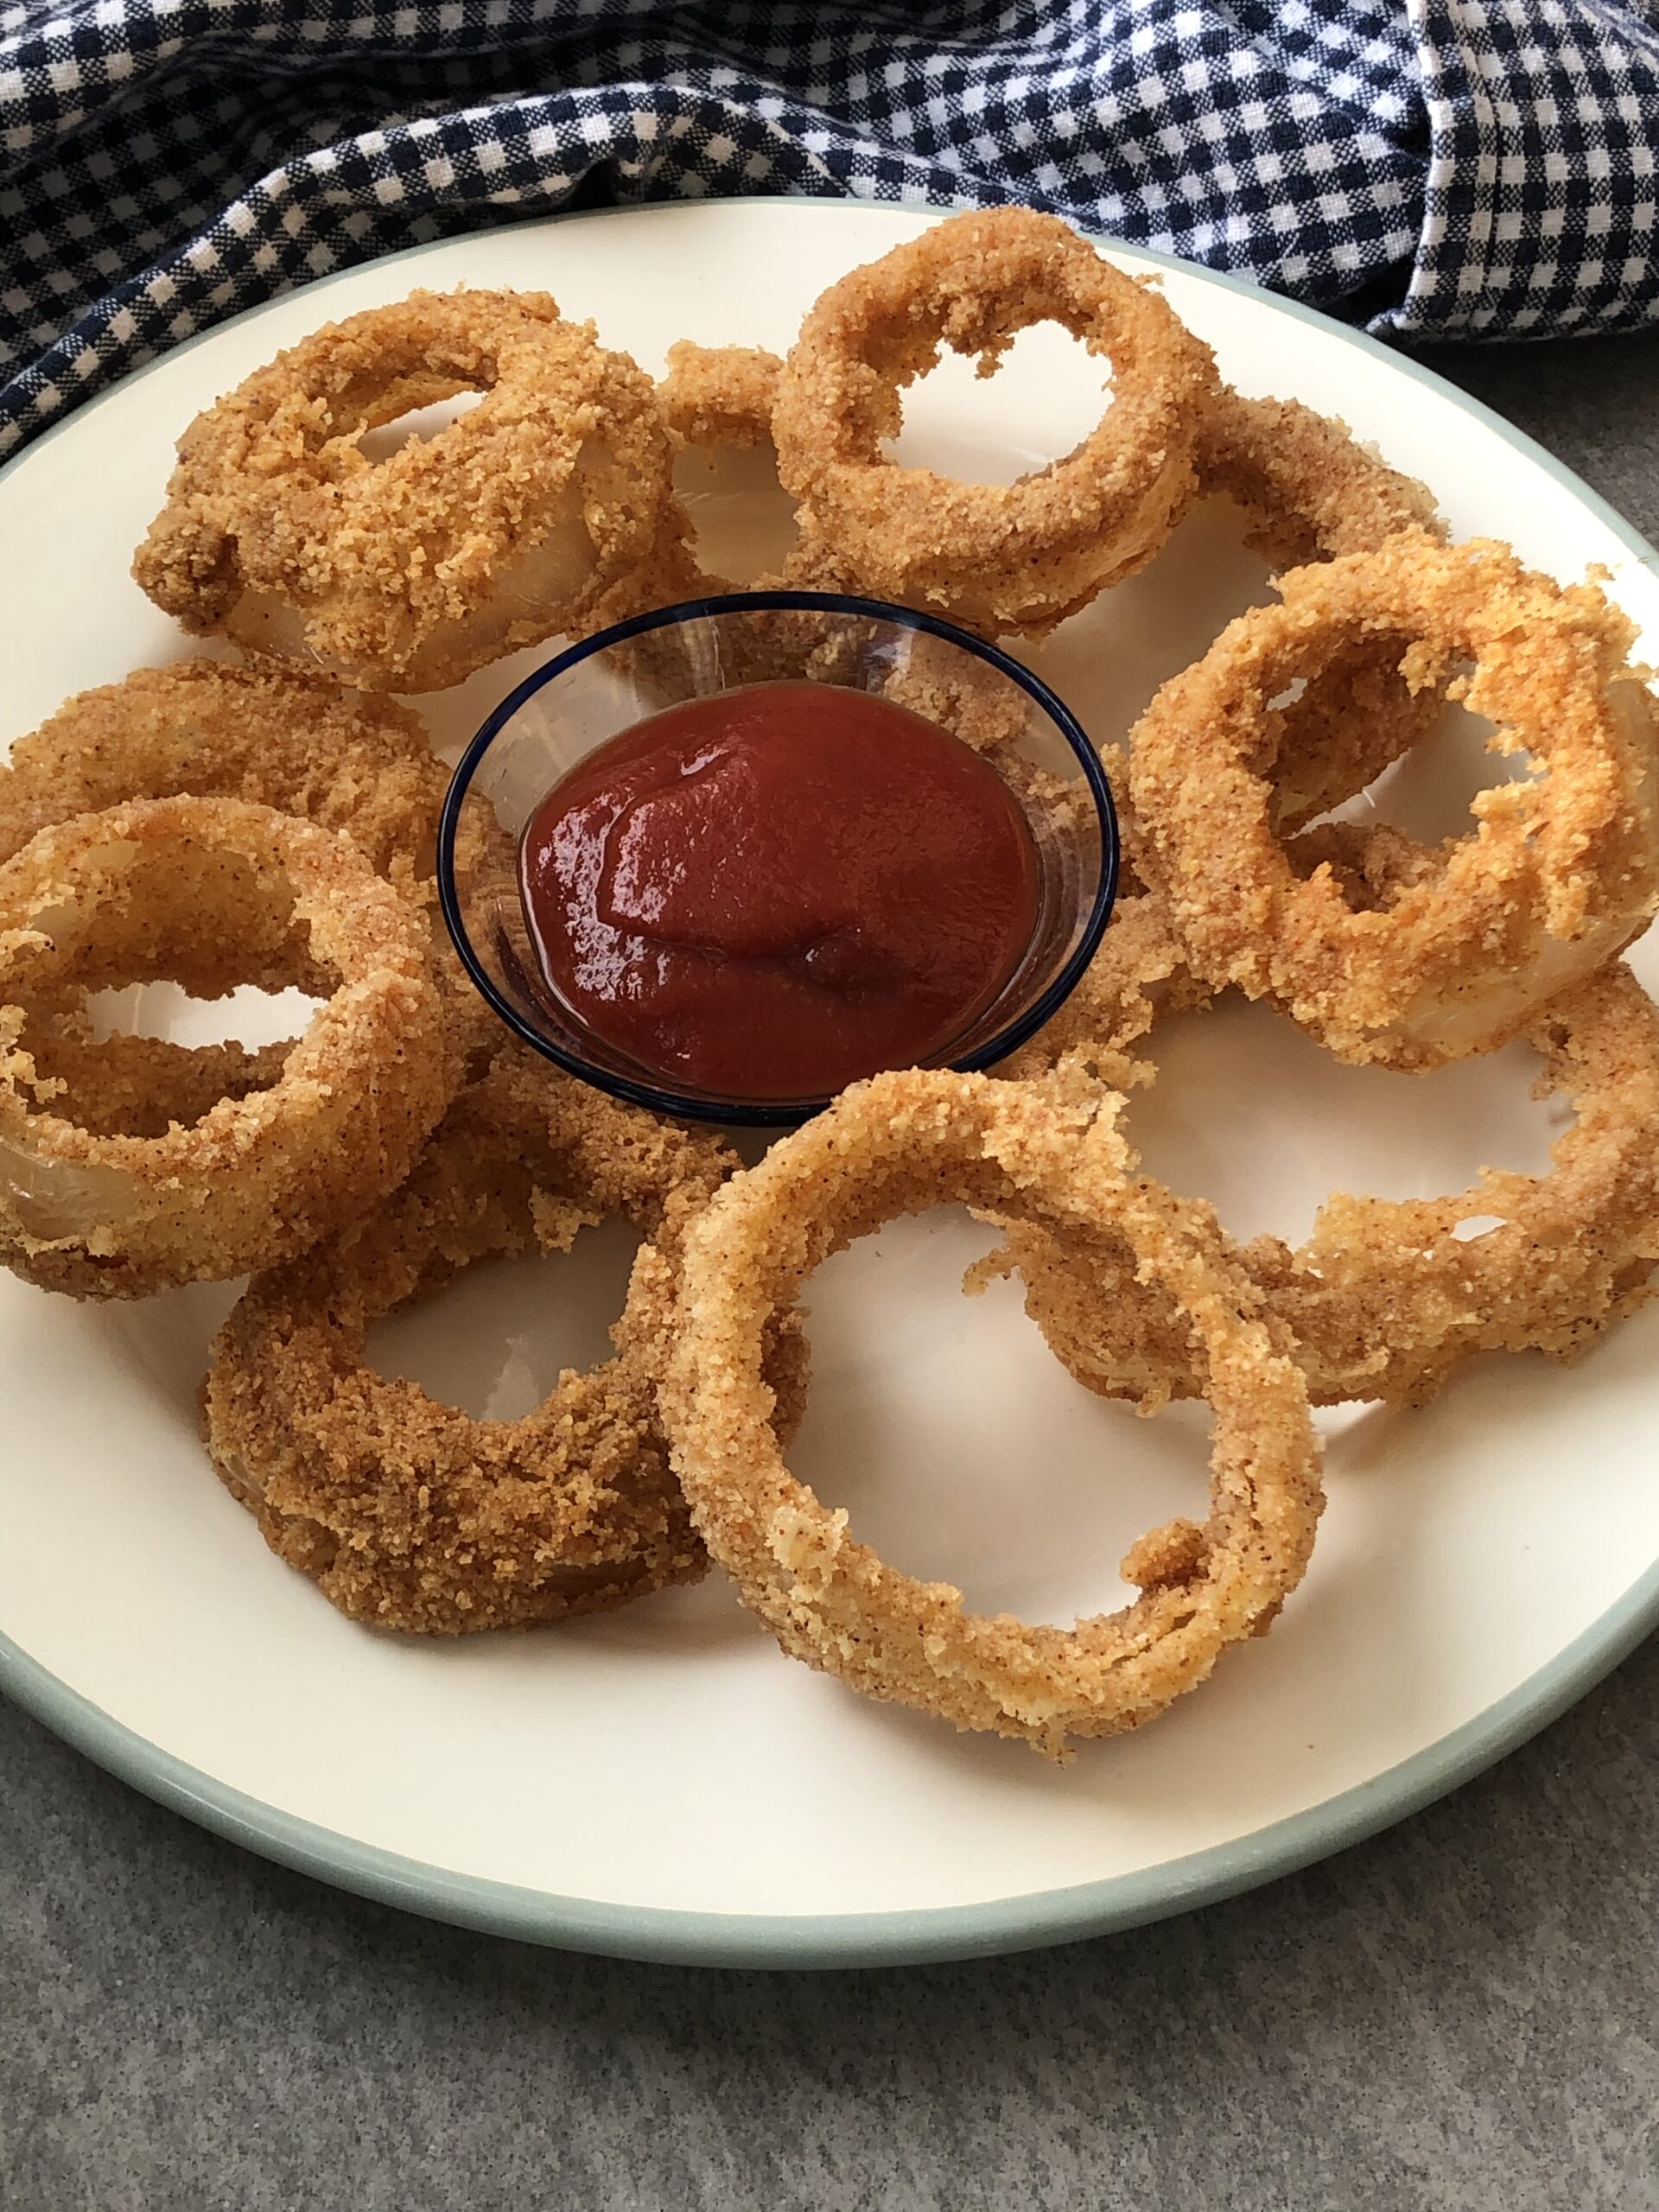 CRISPY Gluten-Free Onion Rings!